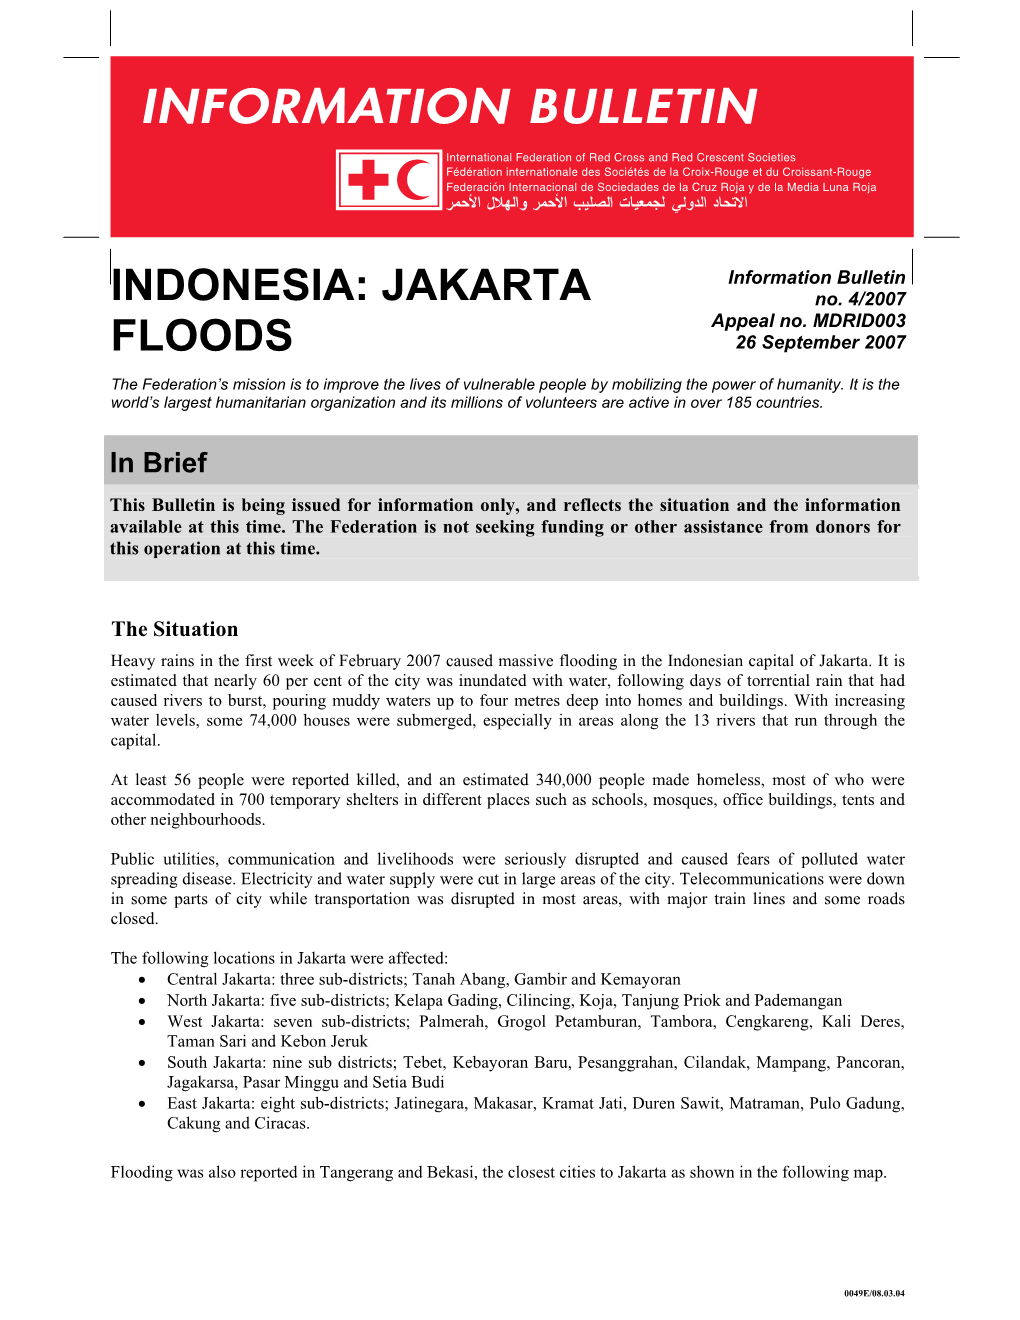 Indonesia: Jakarta Floods